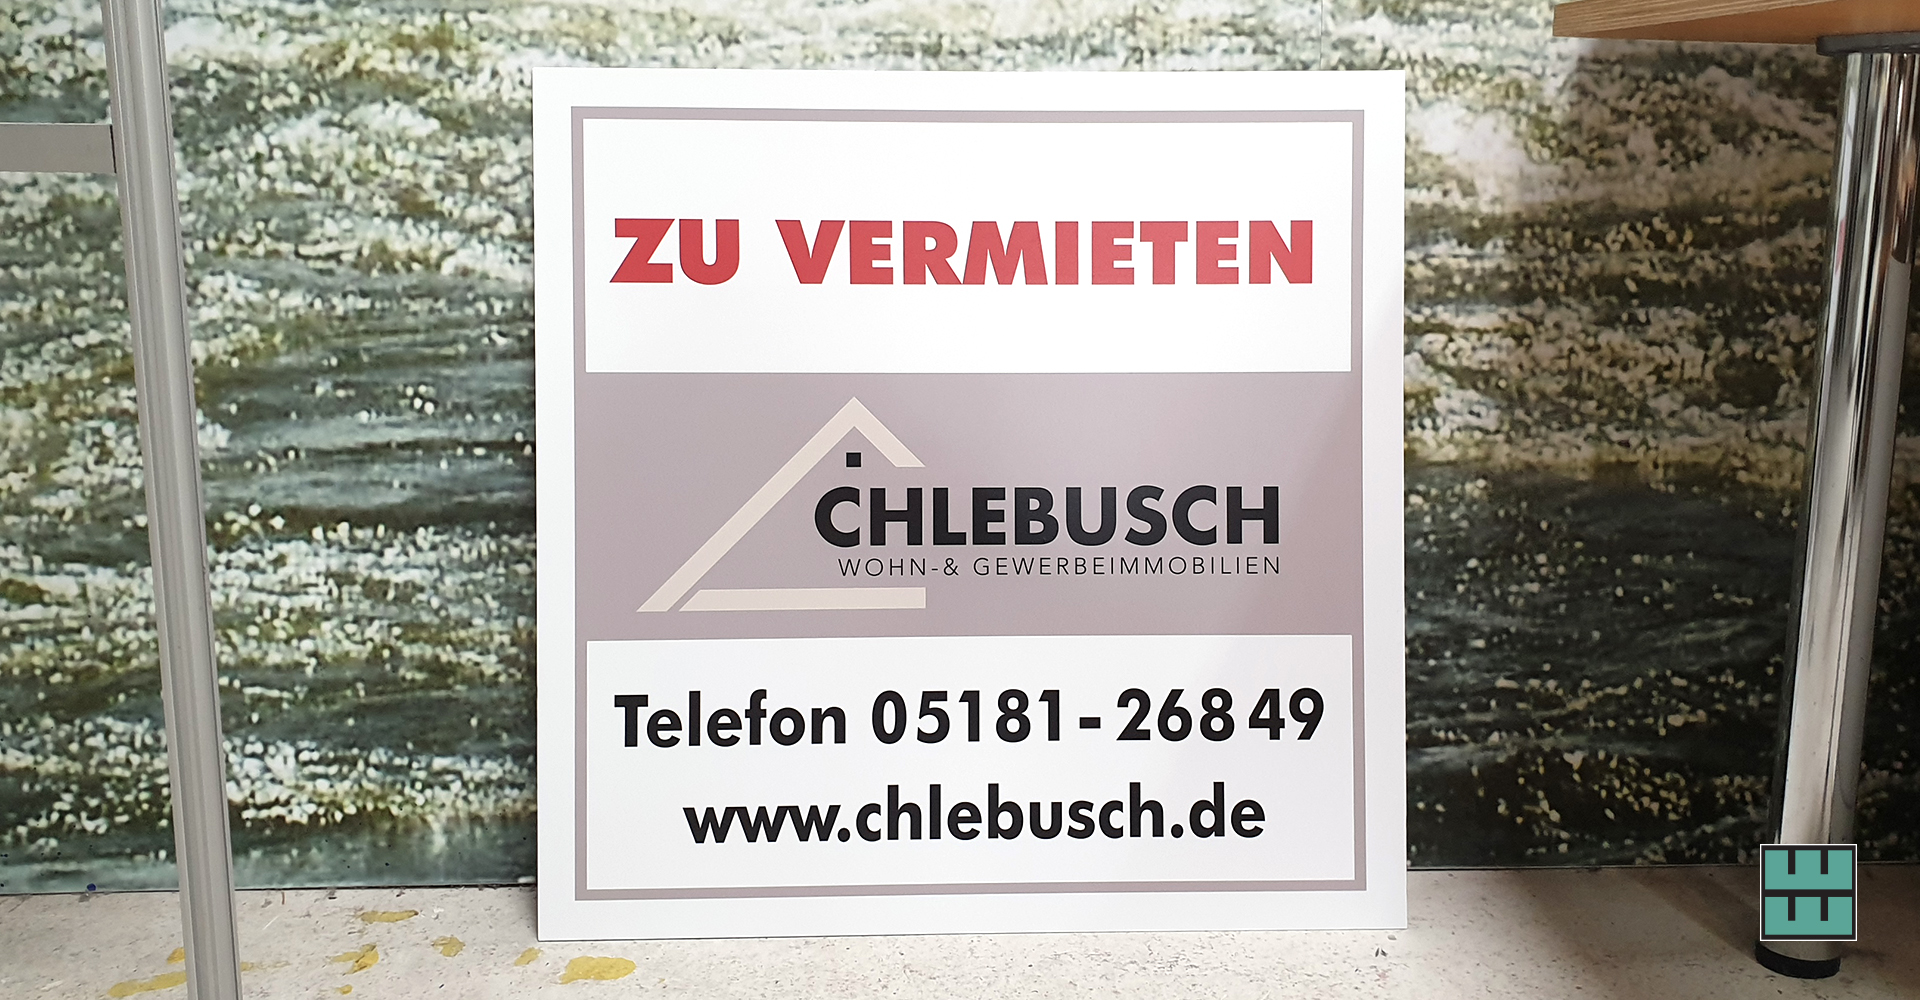 Für das Architekturbüro Chlebusch aus Alfeld durften wir ein neues Schild anfertigen.